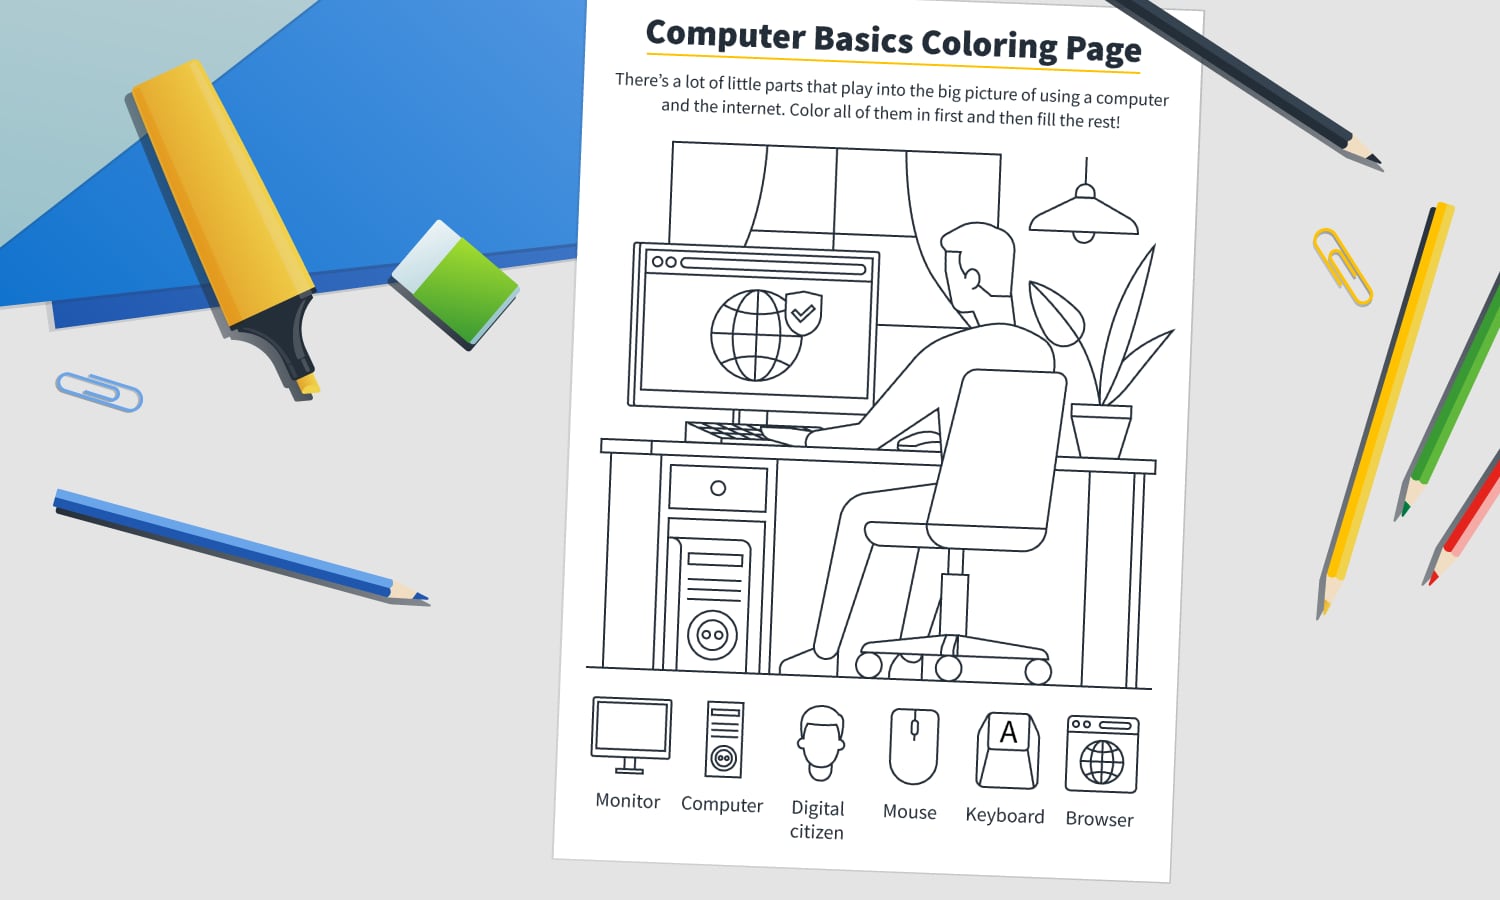 Mockup computer basics coloring page